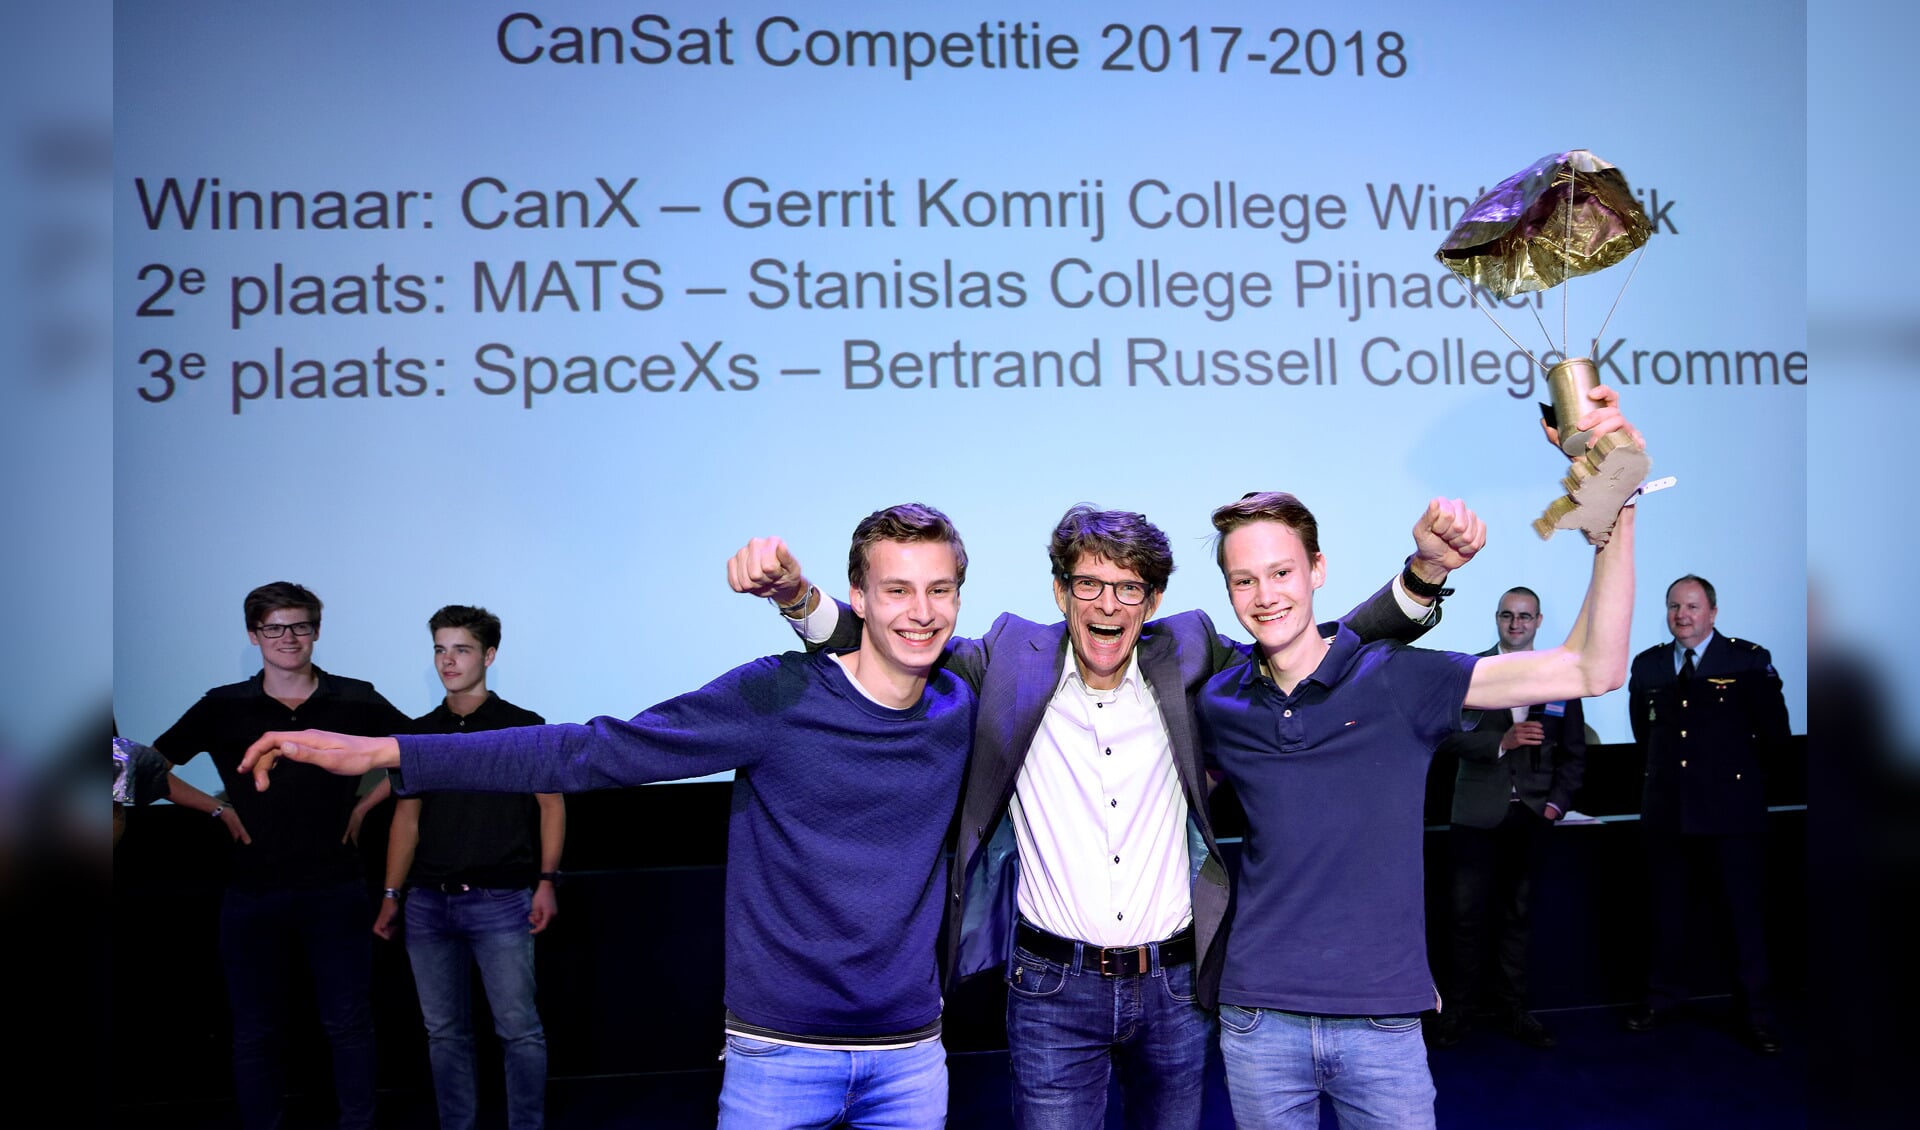 Teamleden Oscar en Floris van het winnende team CanX uit Winterswijk met hun docent. Teamleden Marnix en Jeroen ontbreken op de foto. Foto: DigiDaan